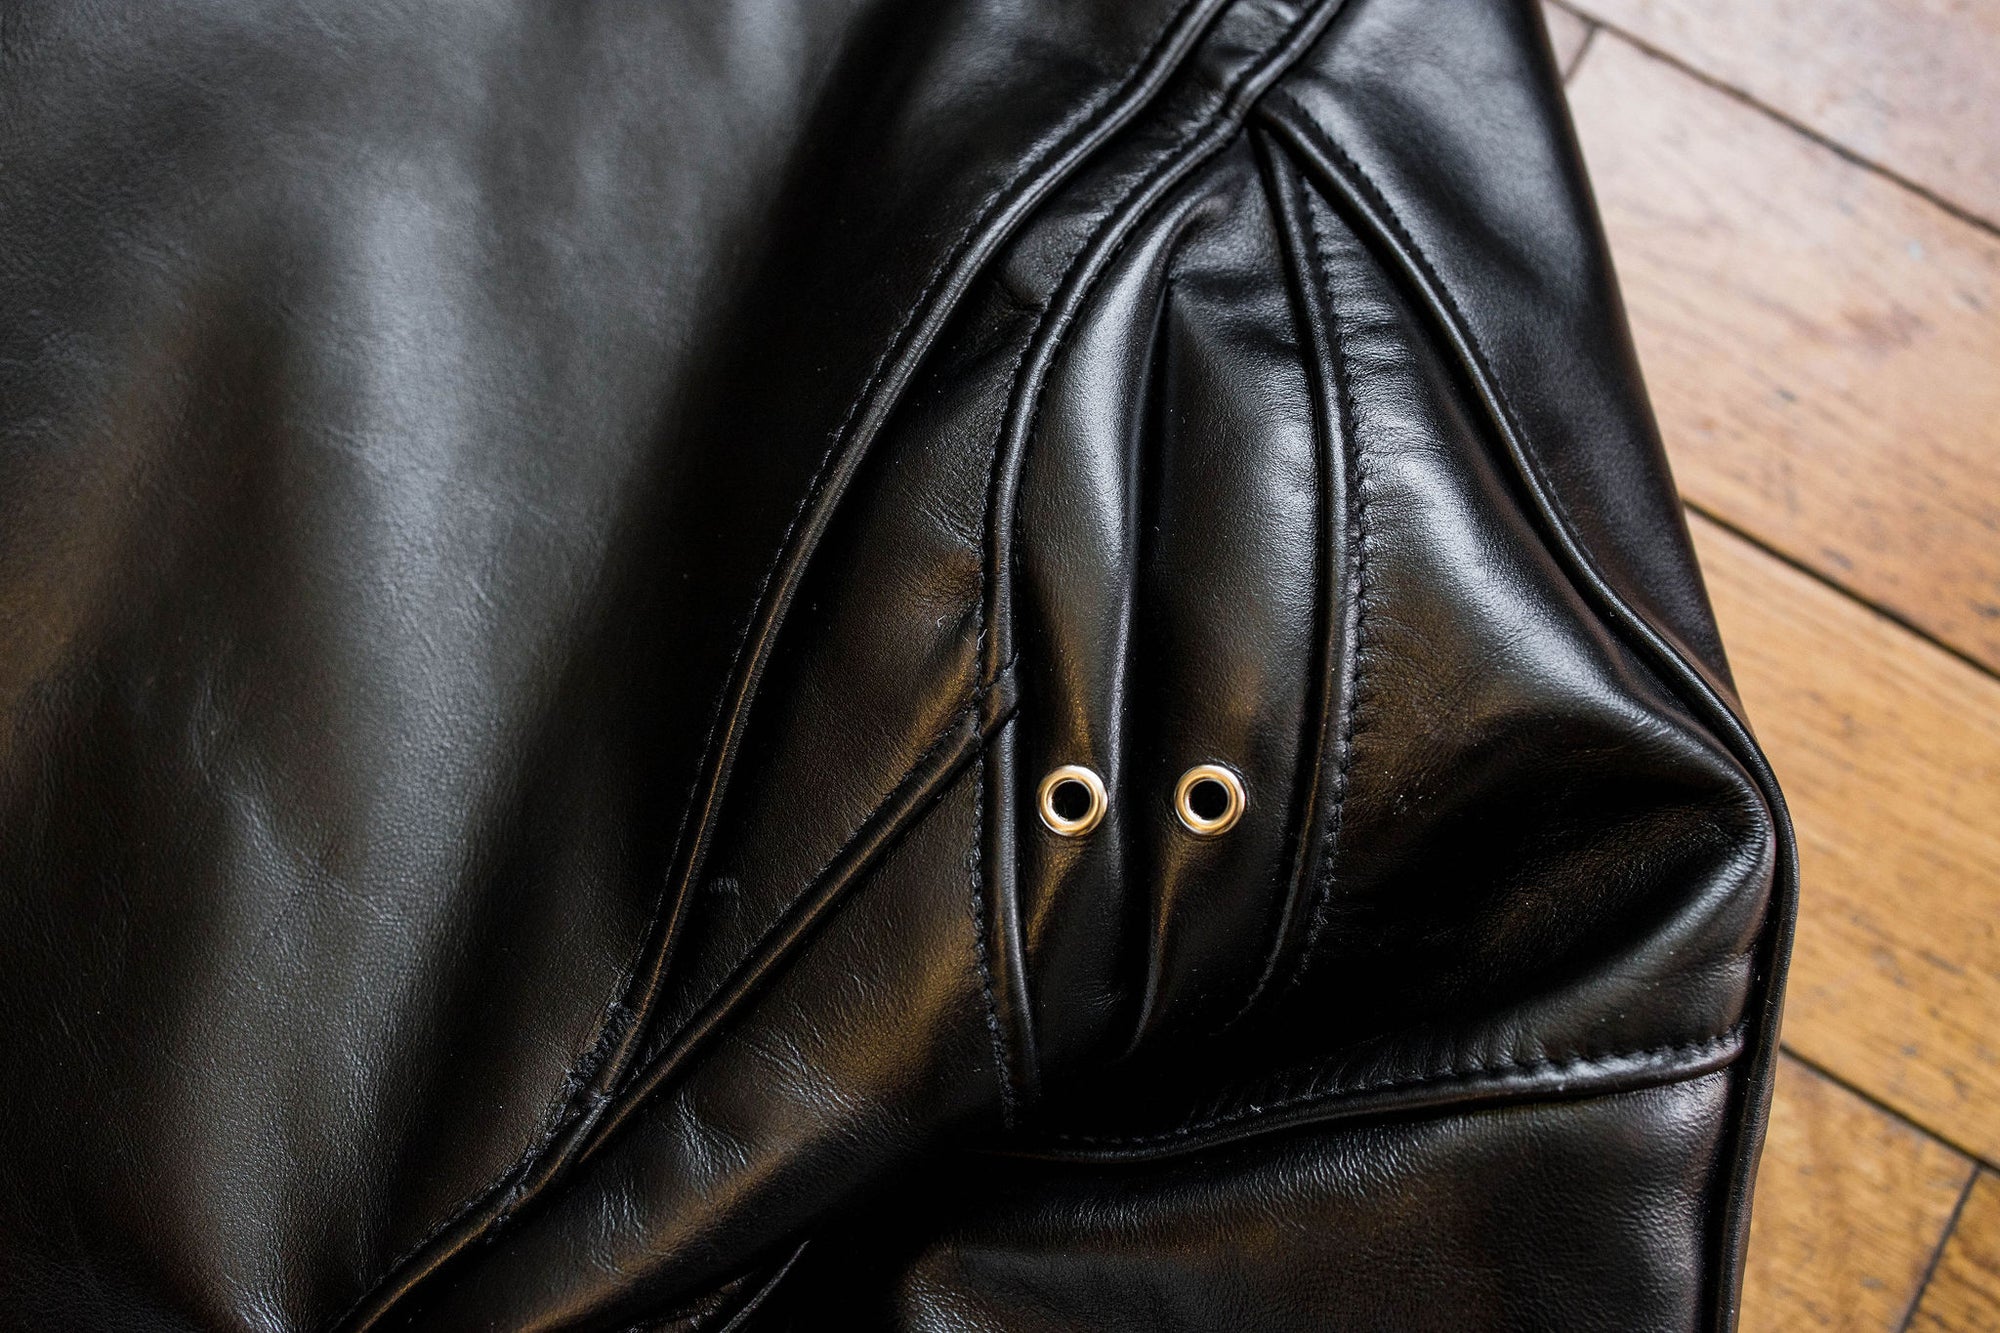 Black Flap-pocket leather jacket, Schott NYC